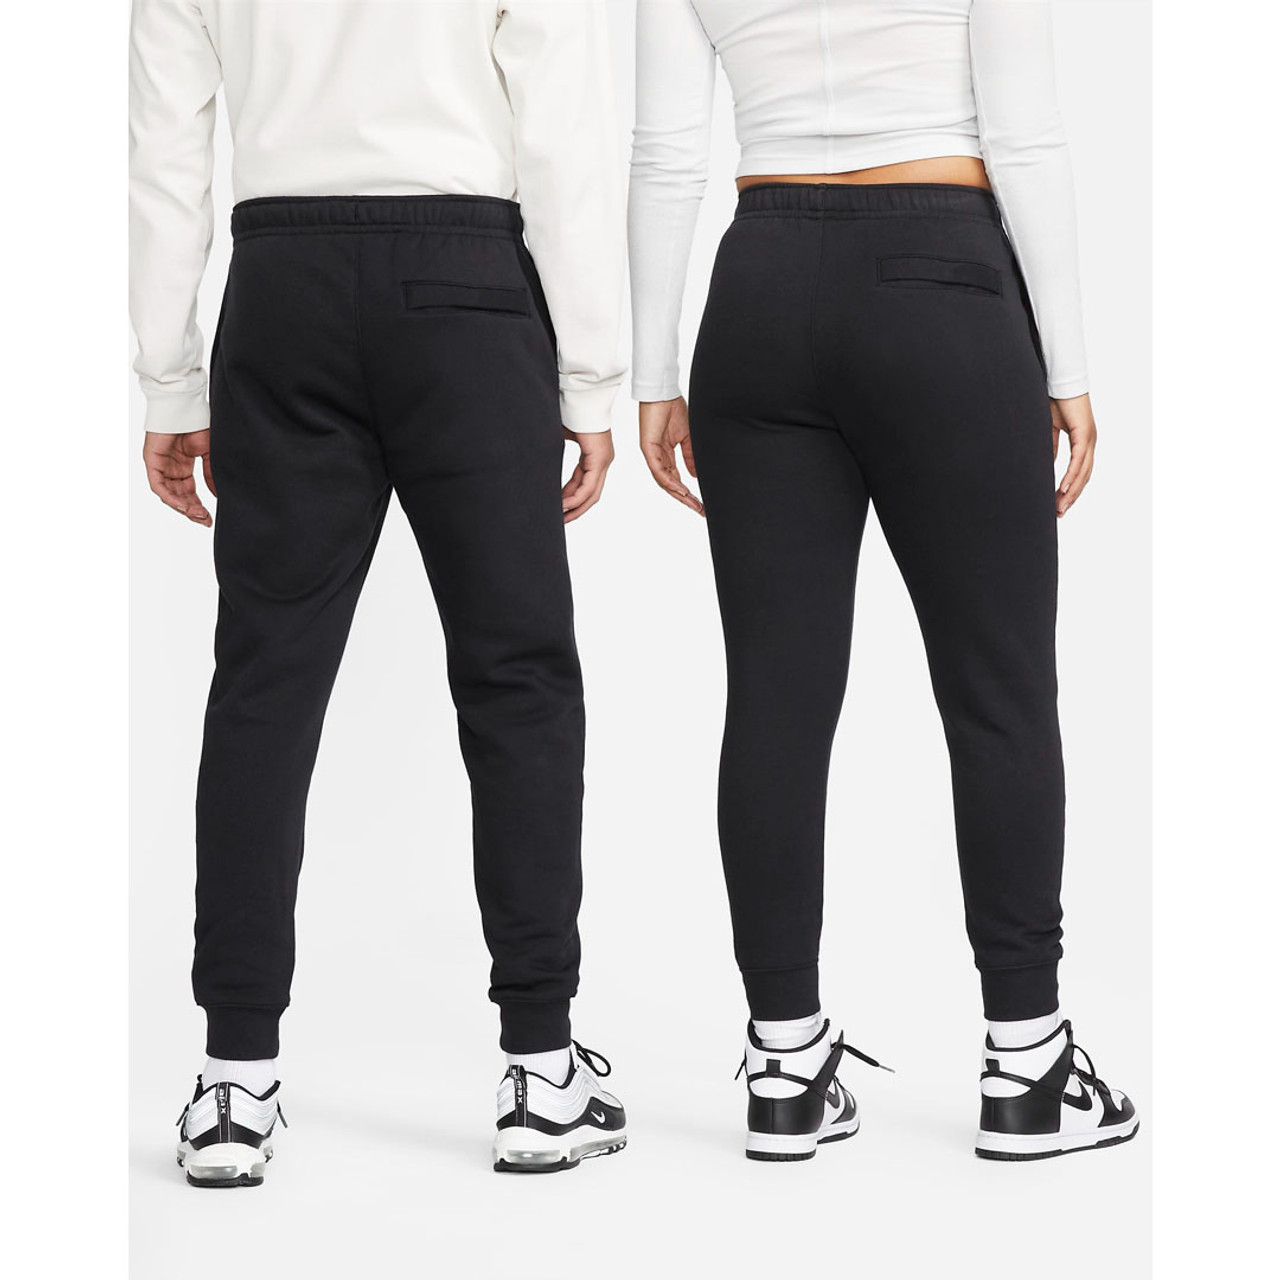 Nike Sportswear Women's Pants